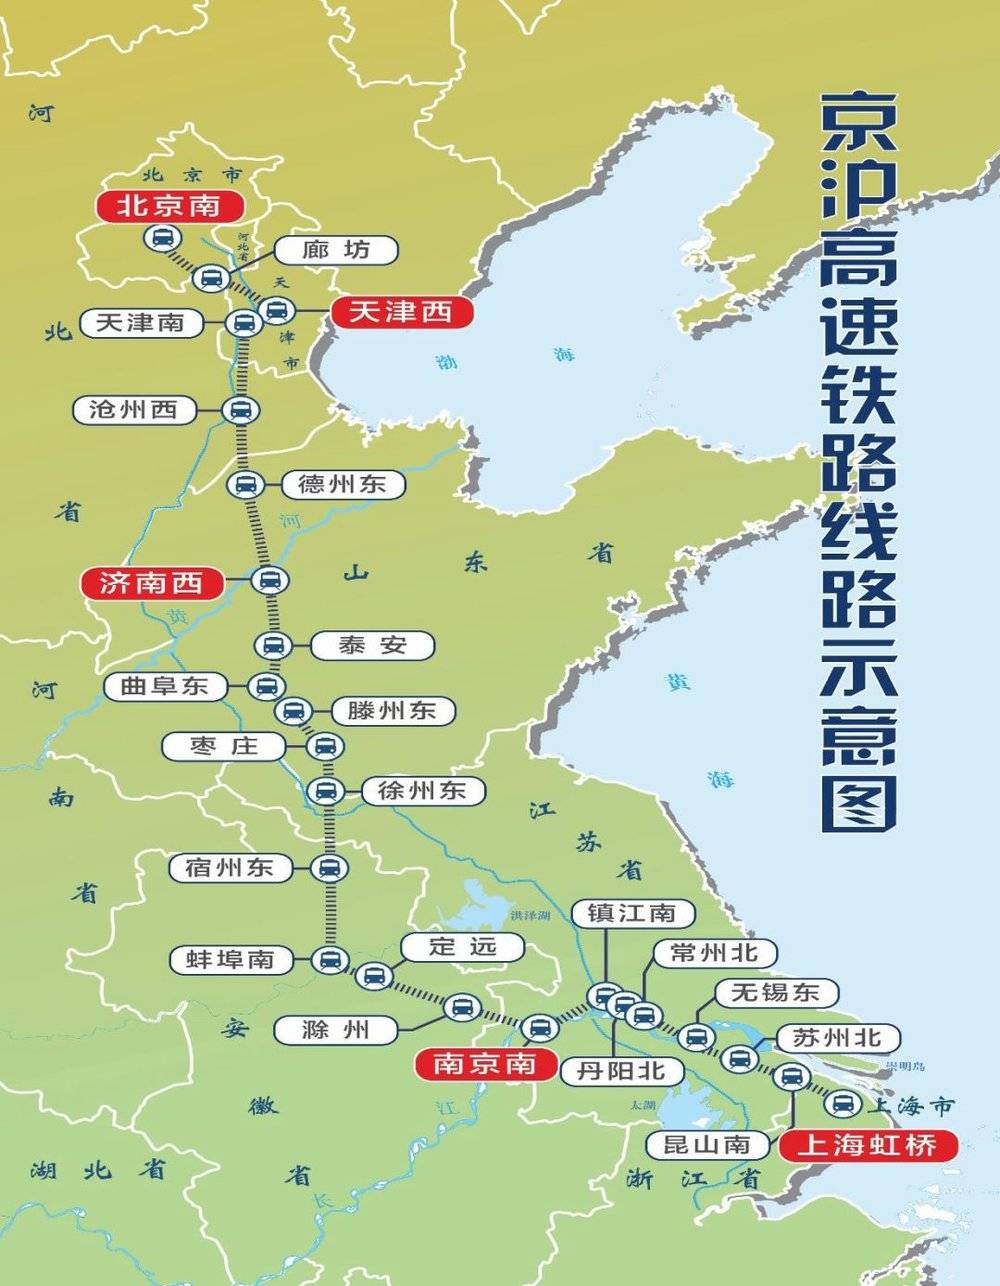 京沪高铁本线(全程行驶在本条高速铁路线上列车)的客座率近年来基本